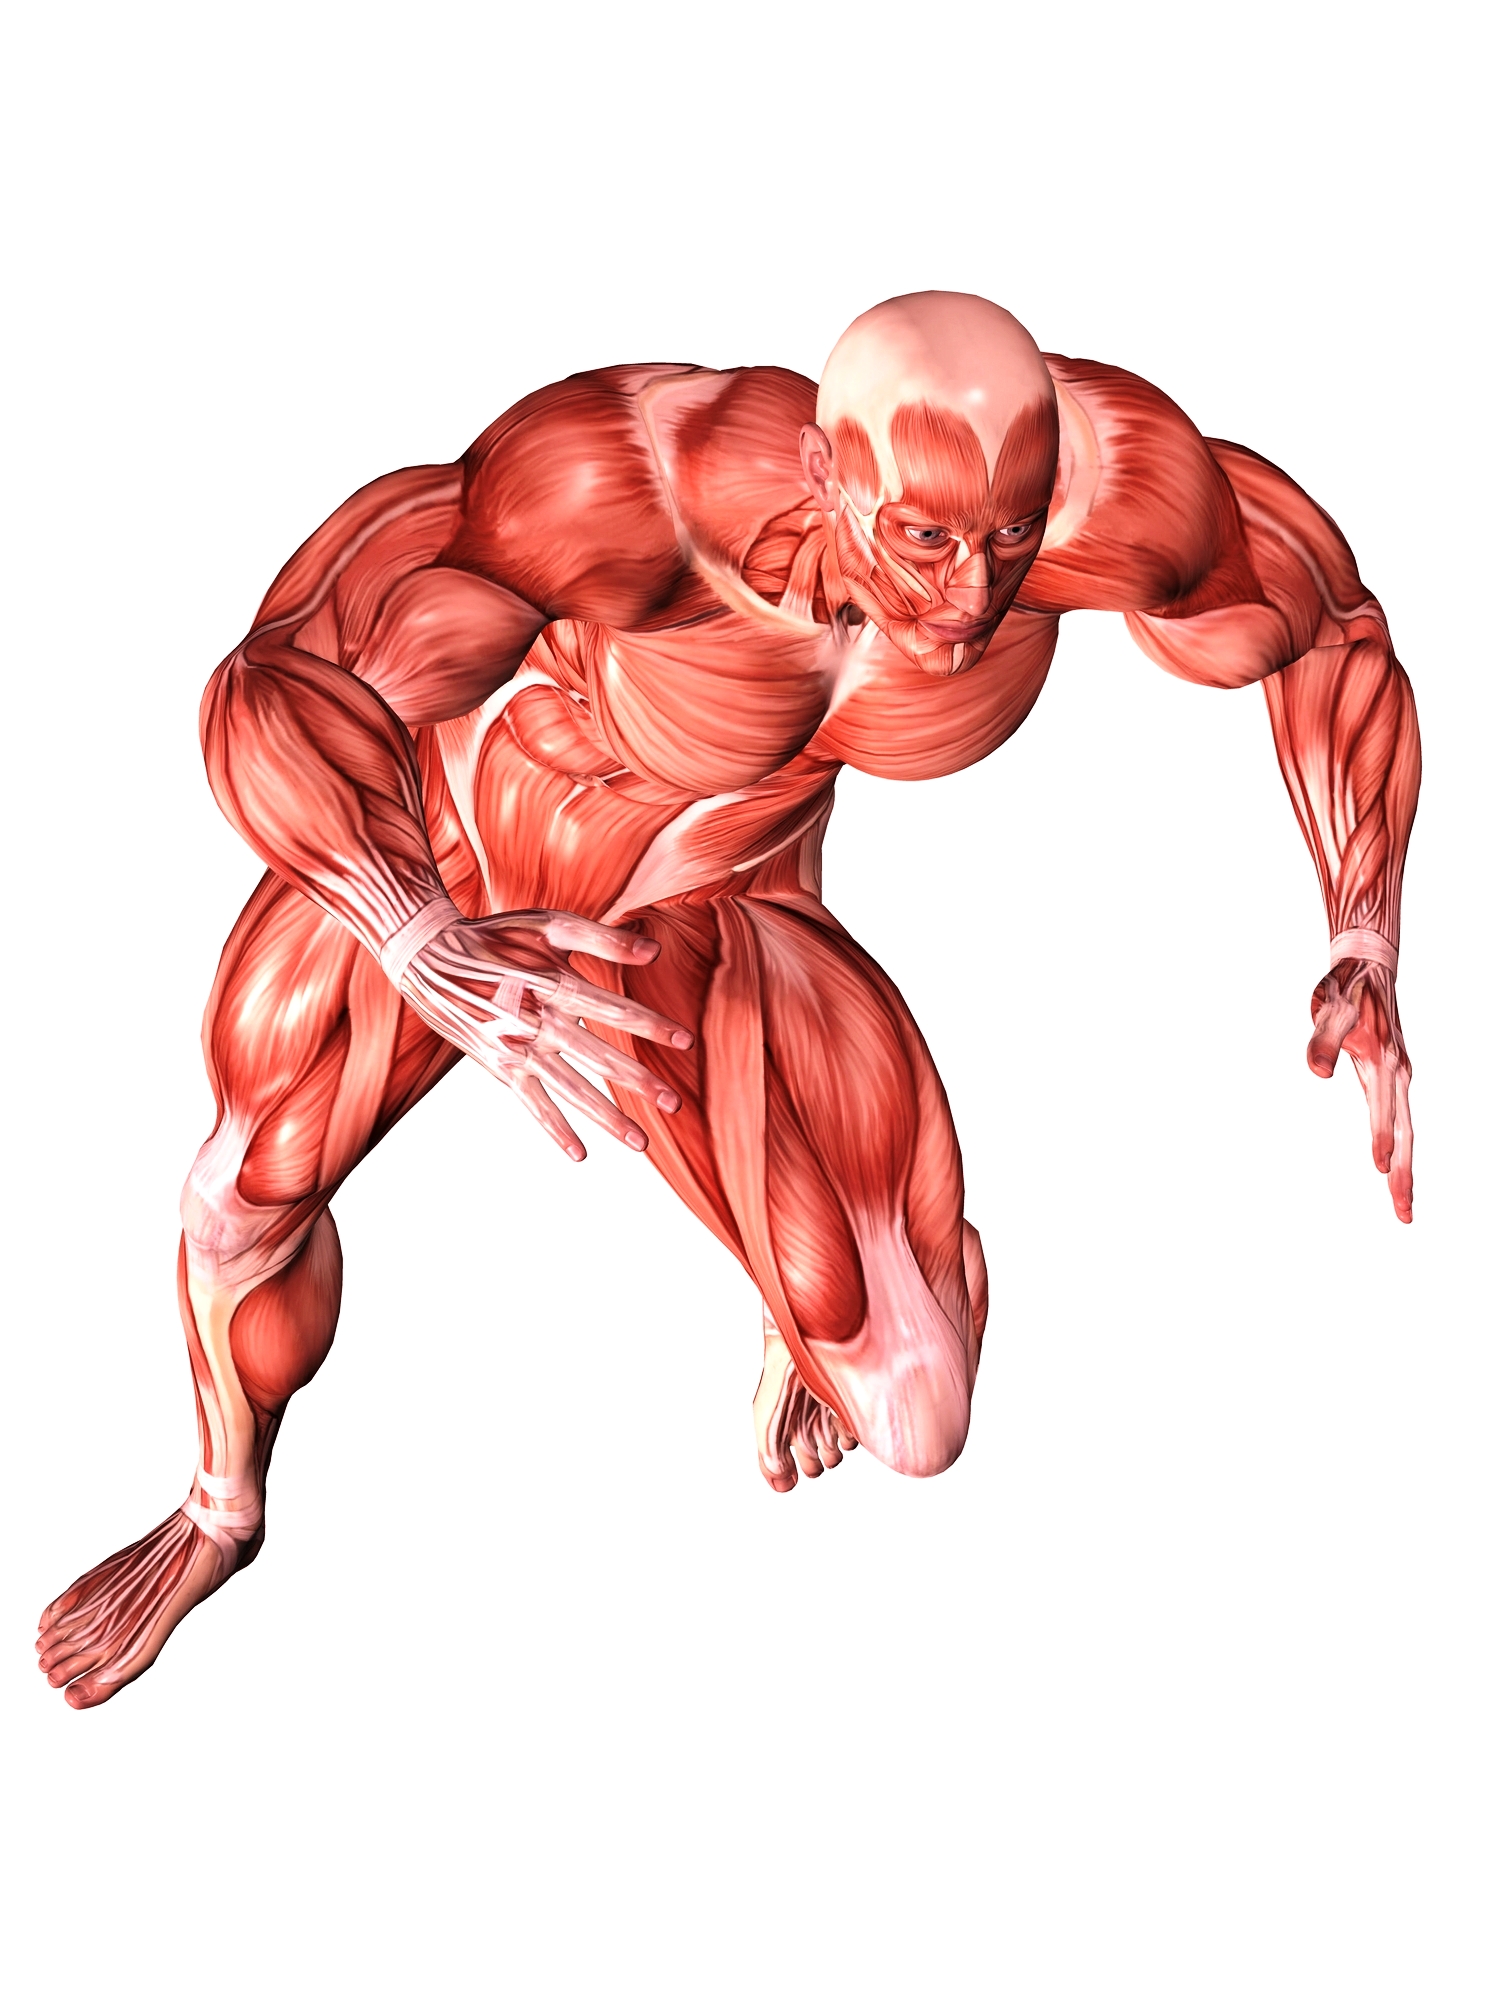 muscular-system-activities-modernheal